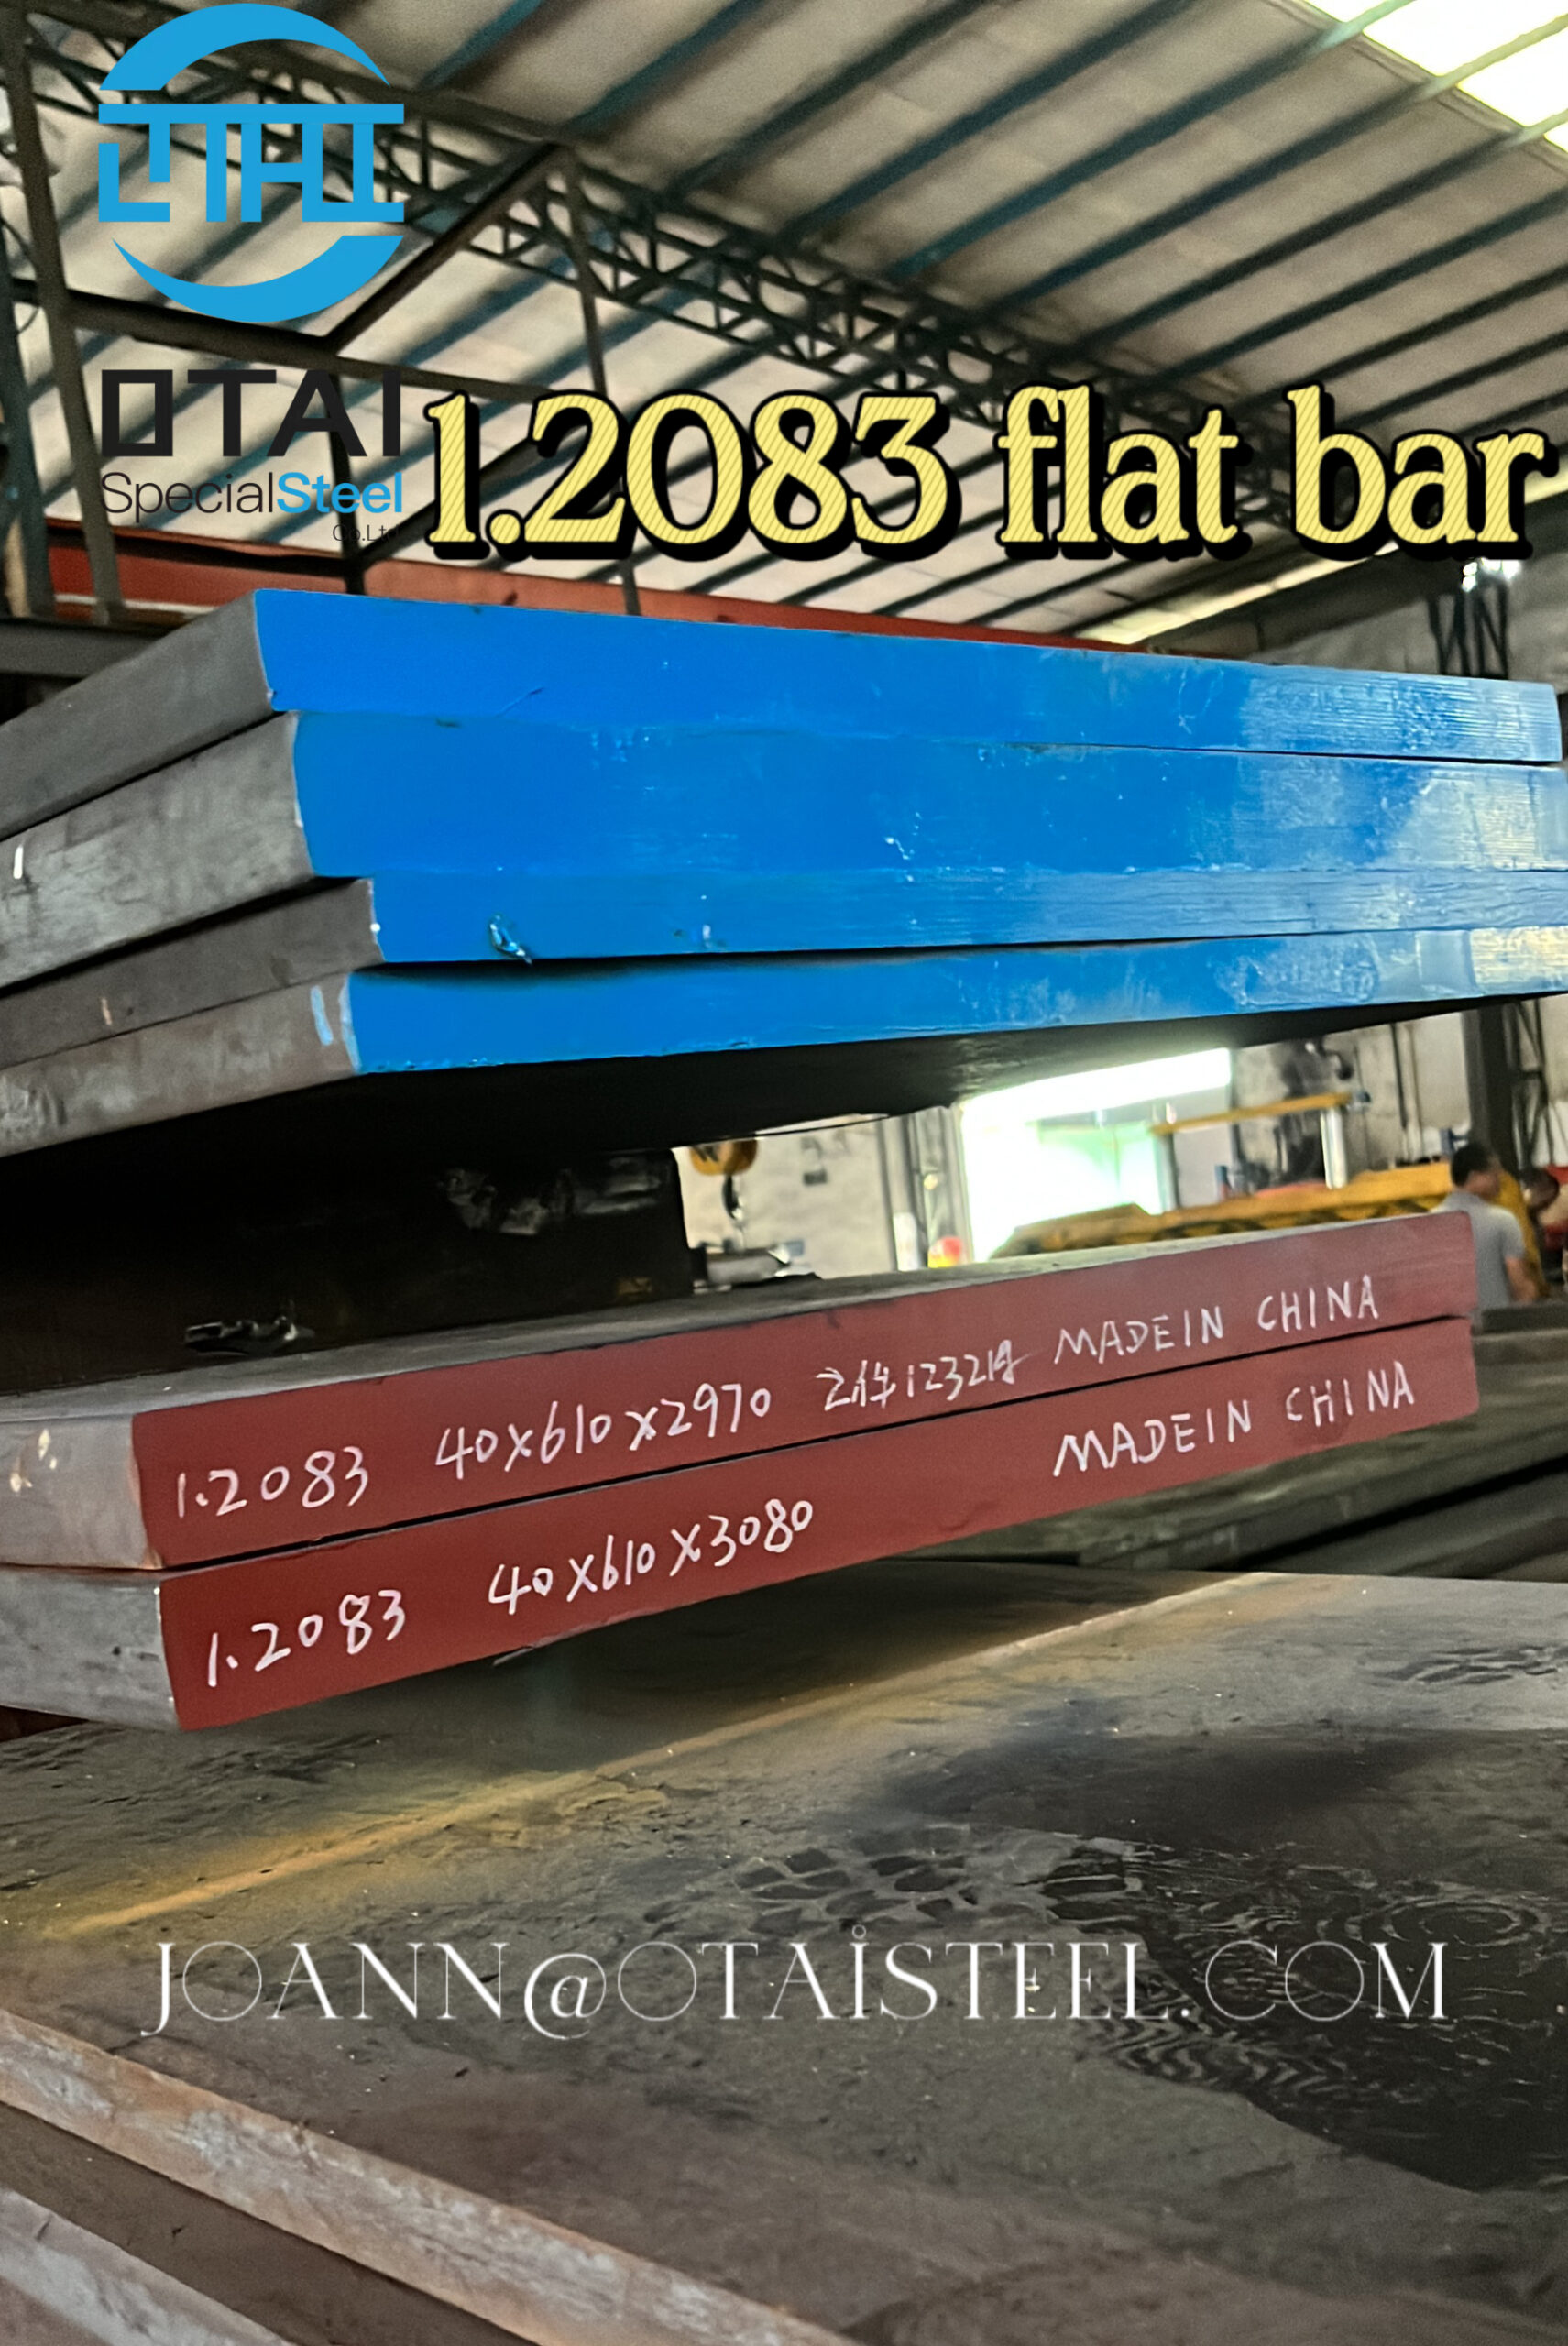 1.2083 flat bar 